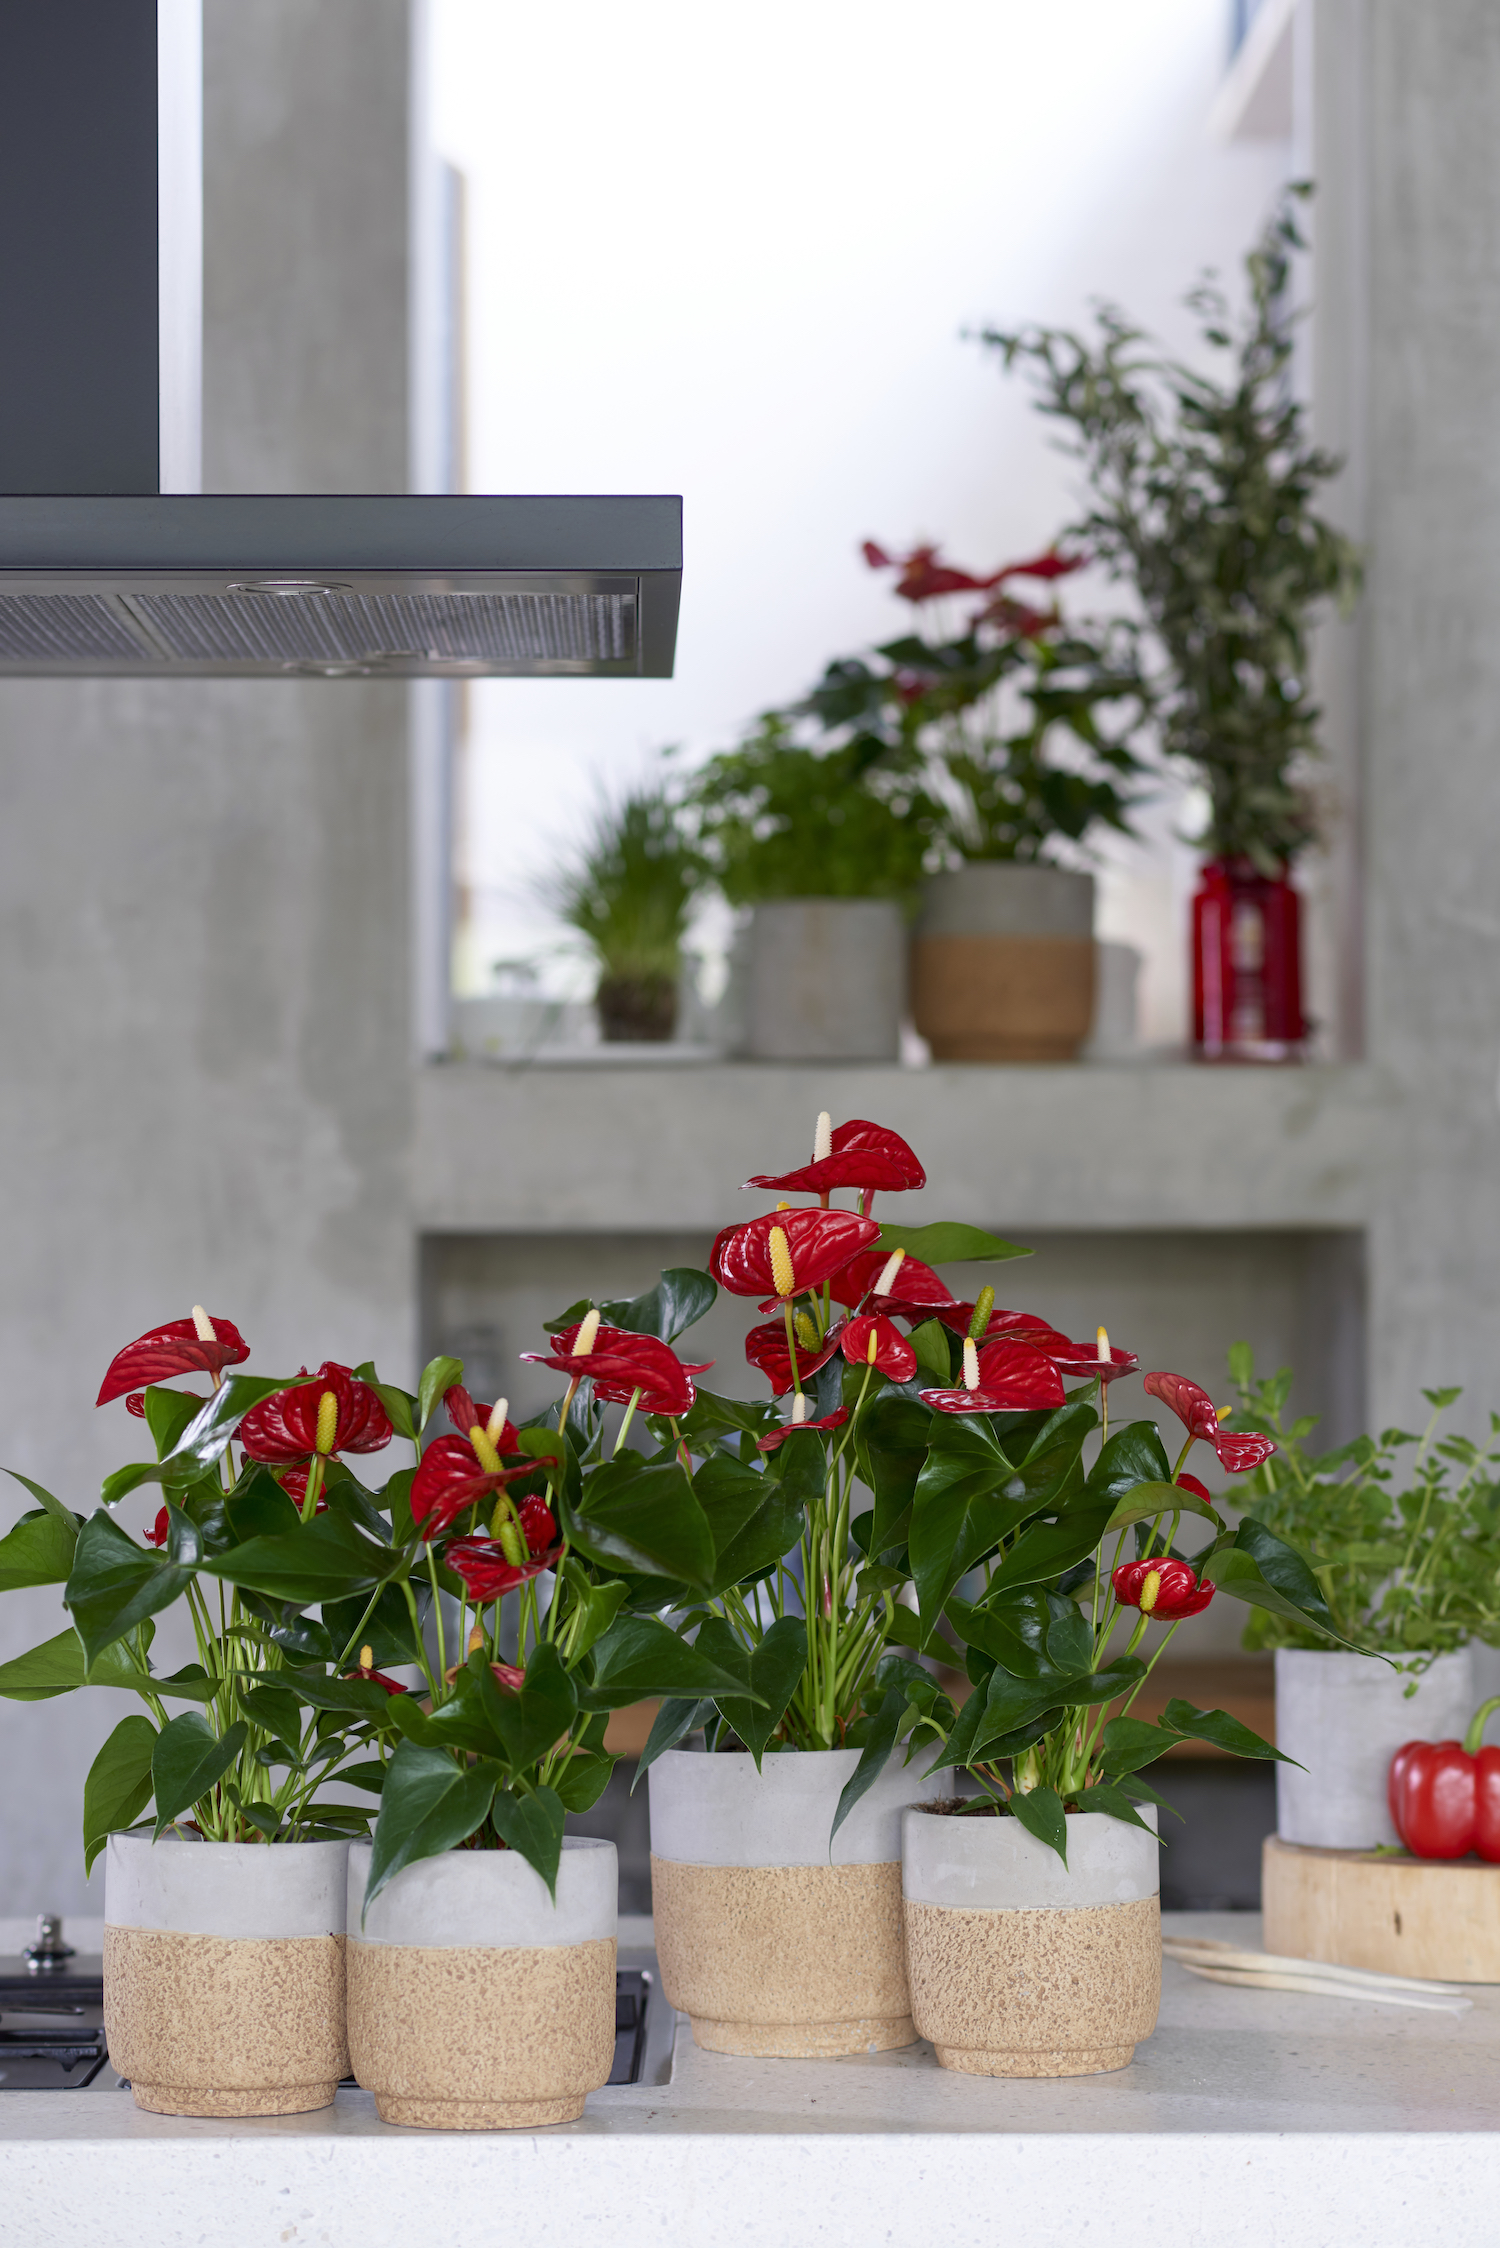 Inspiratie: zo style je de keuken met anthurium planten